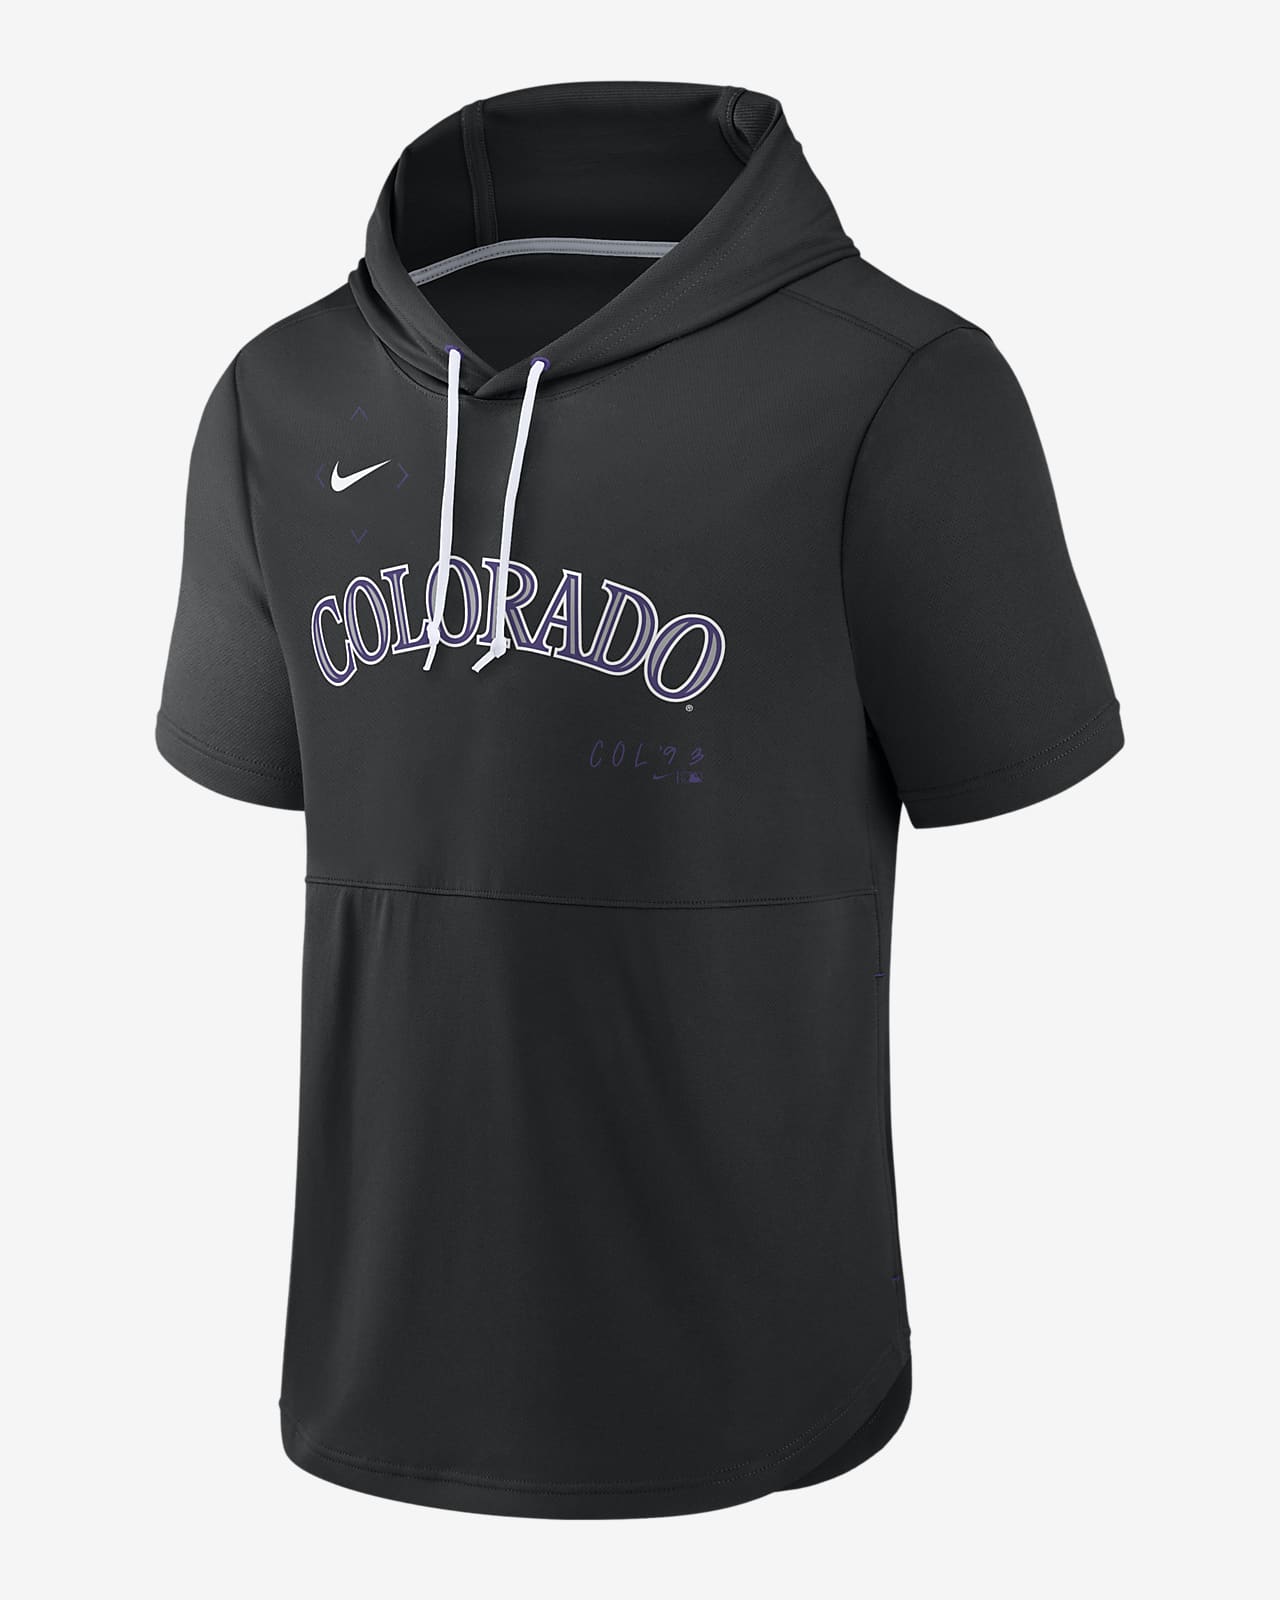 Nike Springer (MLB Colorado Rockies) Men's Short-Sleeve Pullover Hoodie